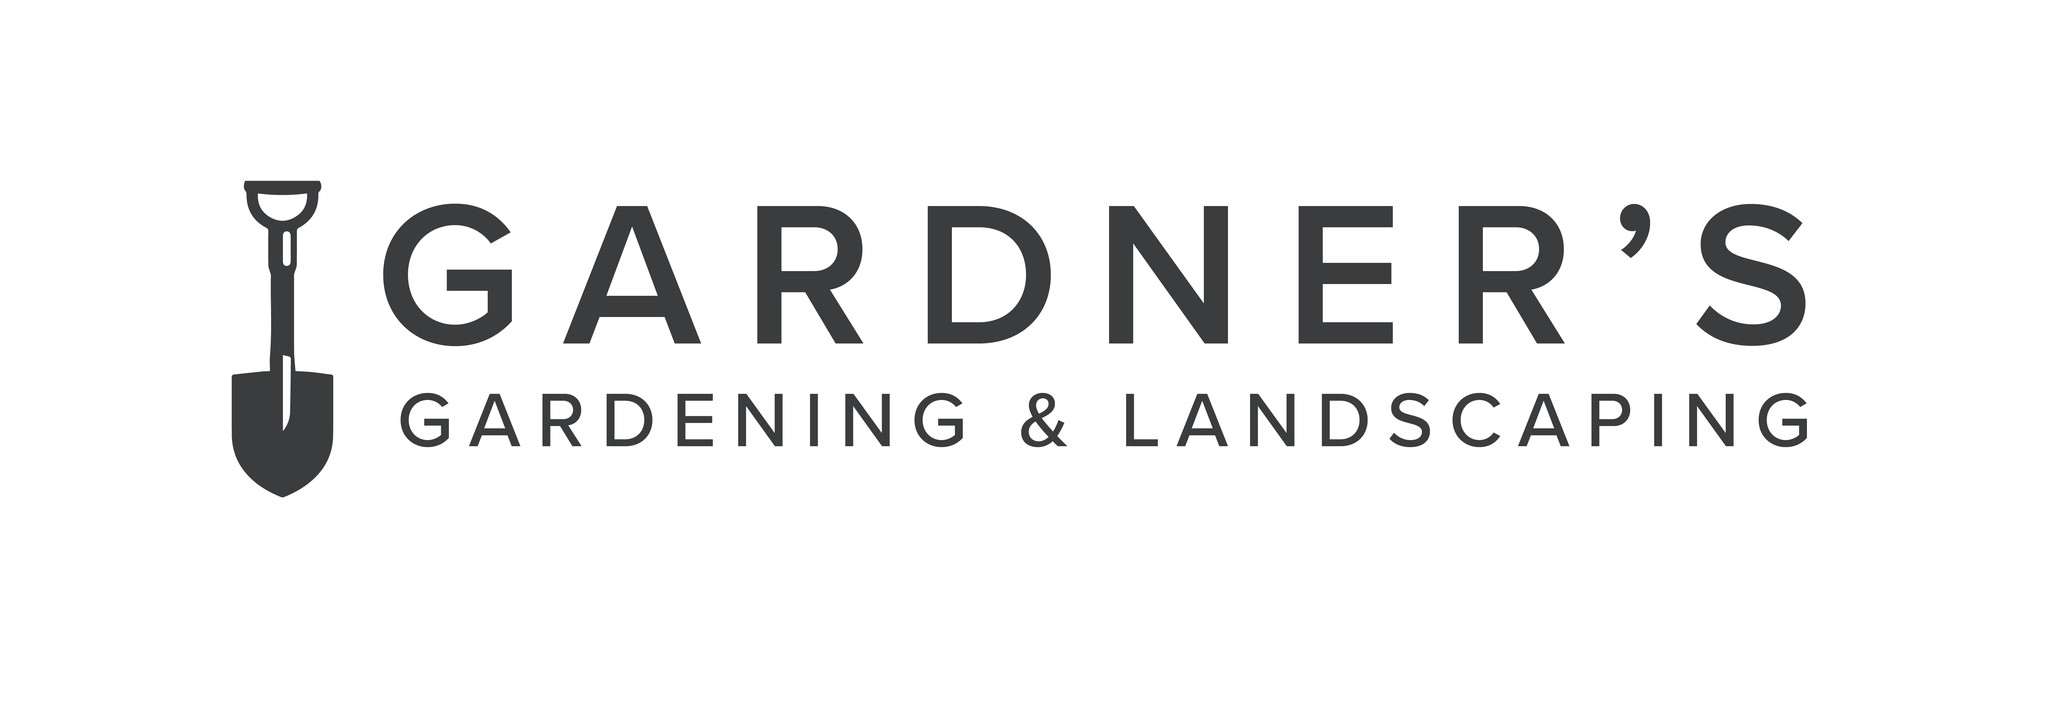 Gardener's Gardening & Landscaping logo